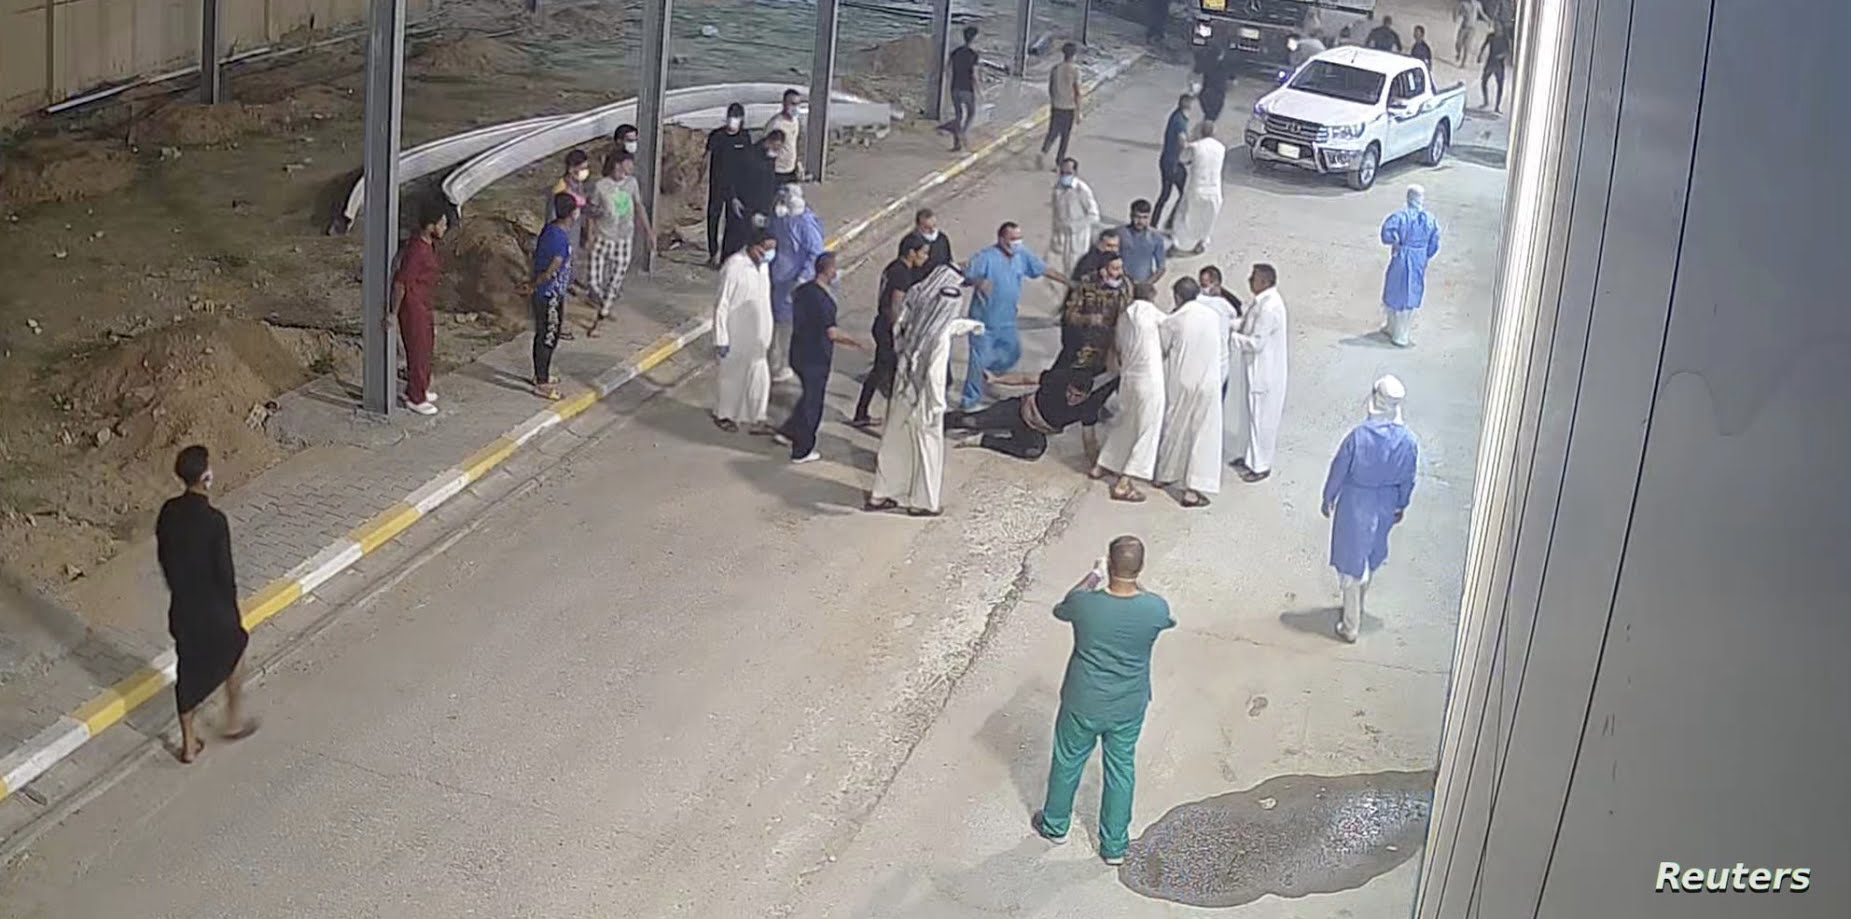 ذوو متوفي يعتدون على أطباء وممرضين في بغداد والأمن يعتقل أثنين منهم